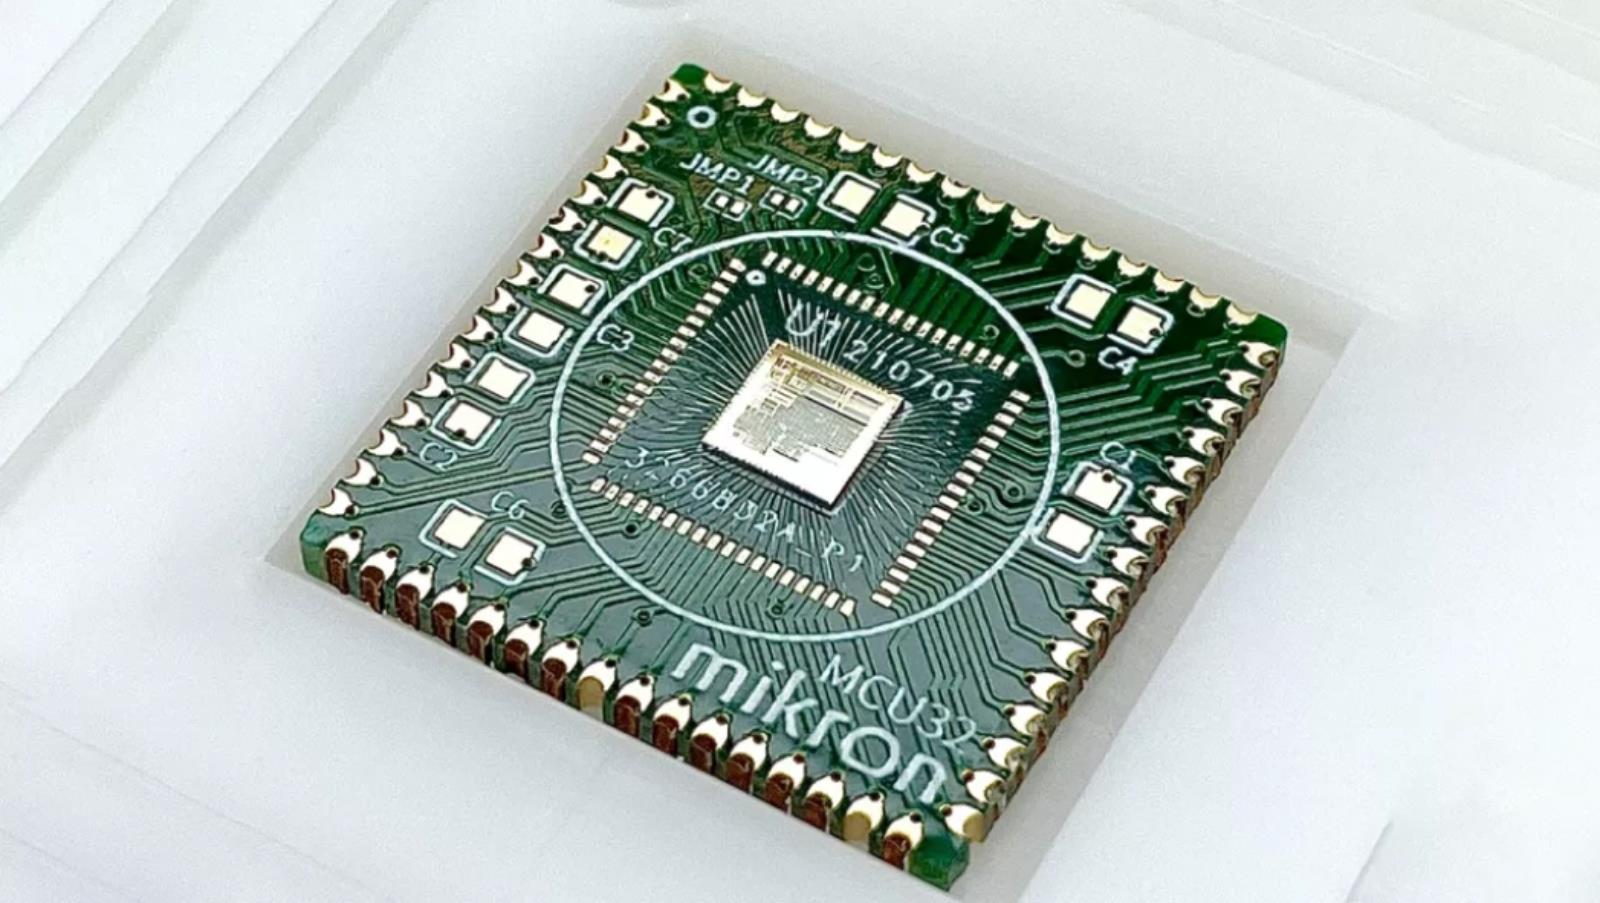 RISC-V podstawą dla kolejnego dzieła. Oto rosyjski mikrokontroler Mikron MIK32